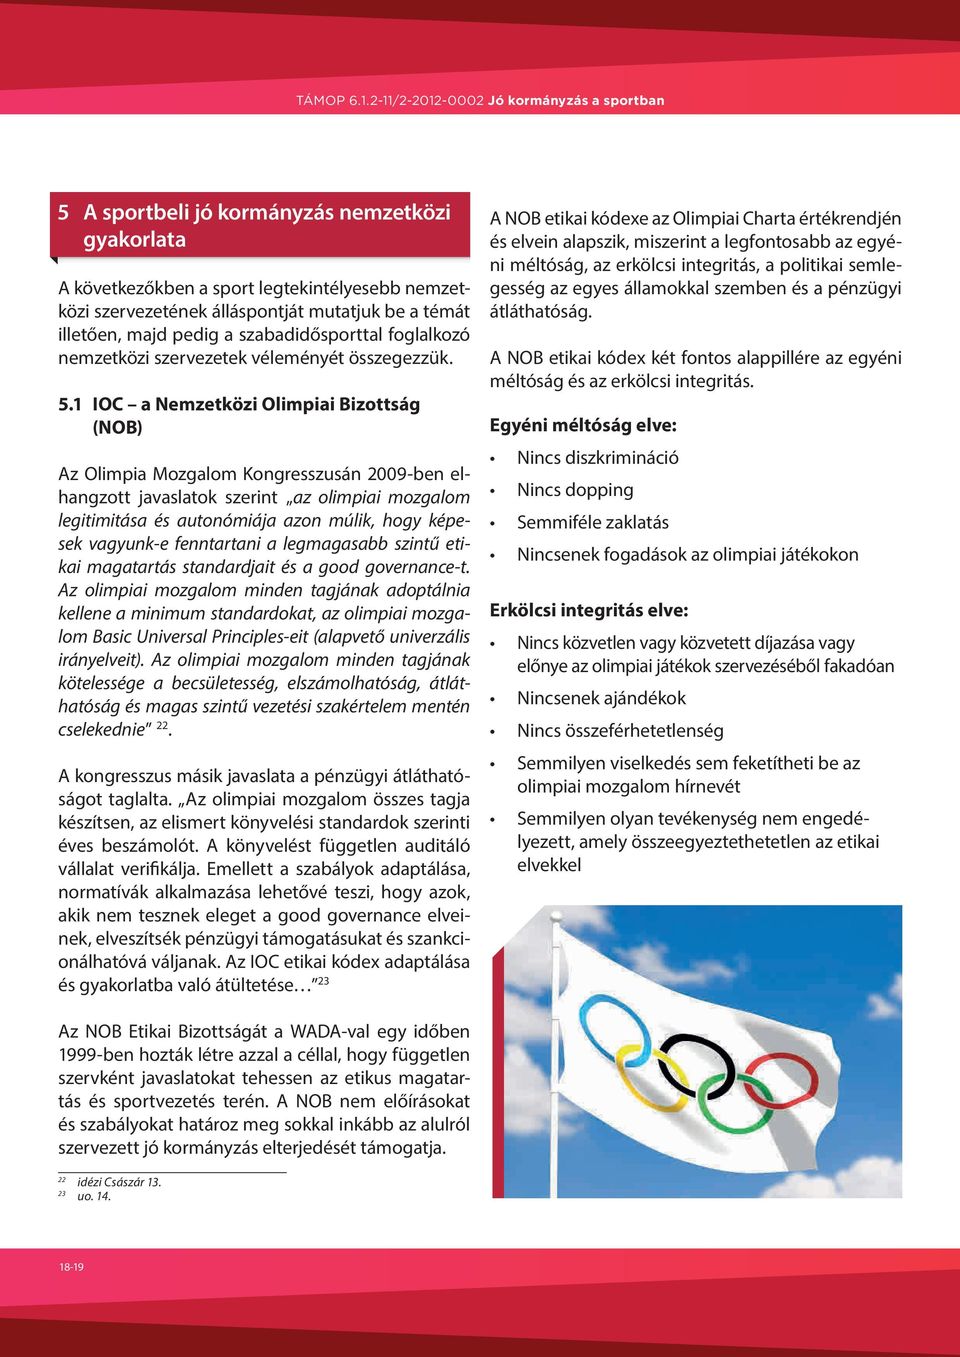 1 IOC a Nemzetközi Olimpiai Bizottság (NOB) Az Olimpia Mozgalom Kongresszusán 2009-ben elhangzott javaslatok szerint az olimpiai mozgalom legitimitása és autonómiája azon múlik, hogy képesek